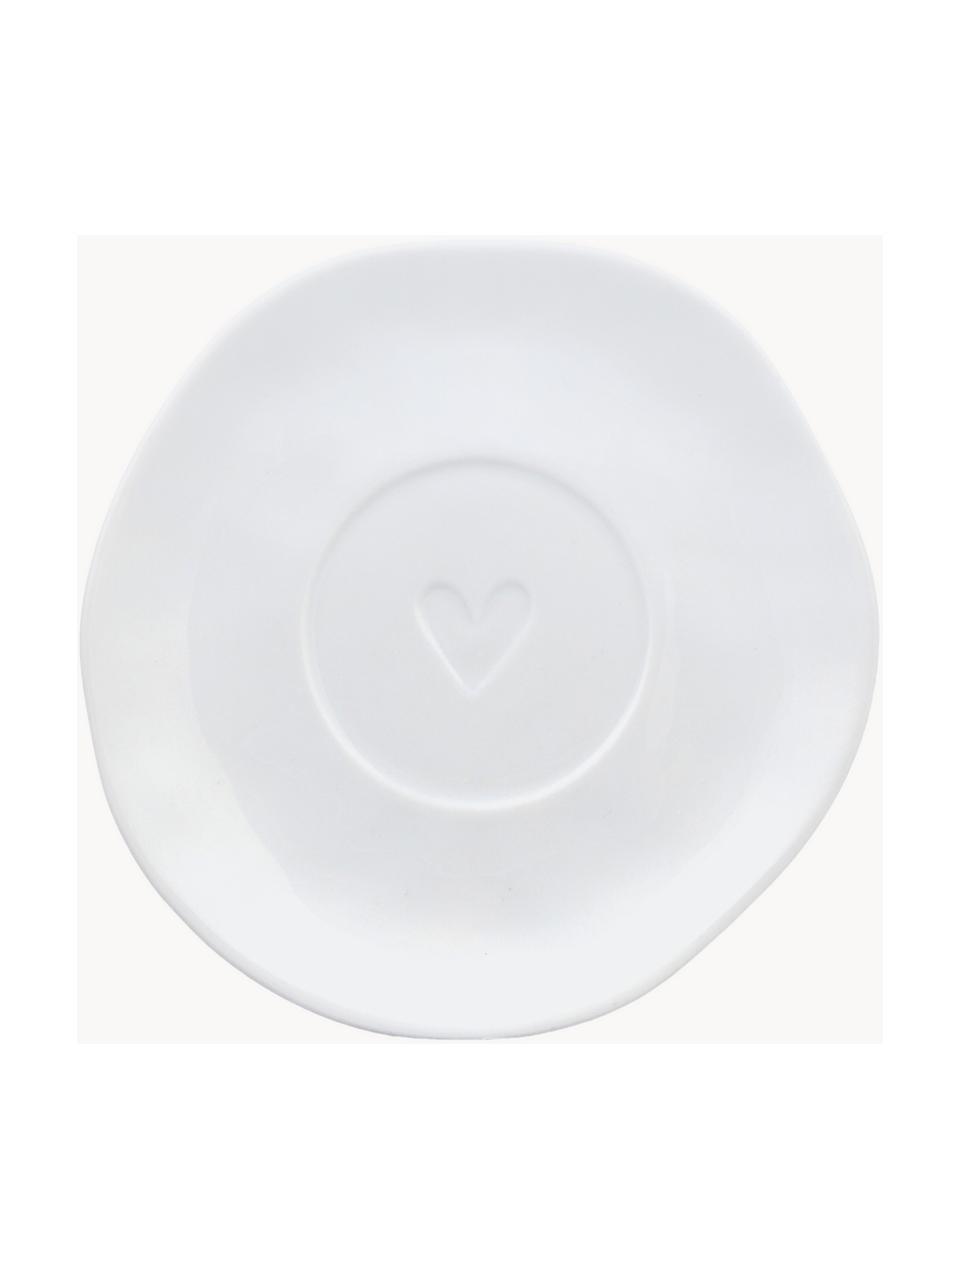 Tasse à expresso en porcelaine avec sous-tasse Heart, Porcelaine, émaillé, Blanc, doré, Ø 6 x haut. 5 cm, 80 ml